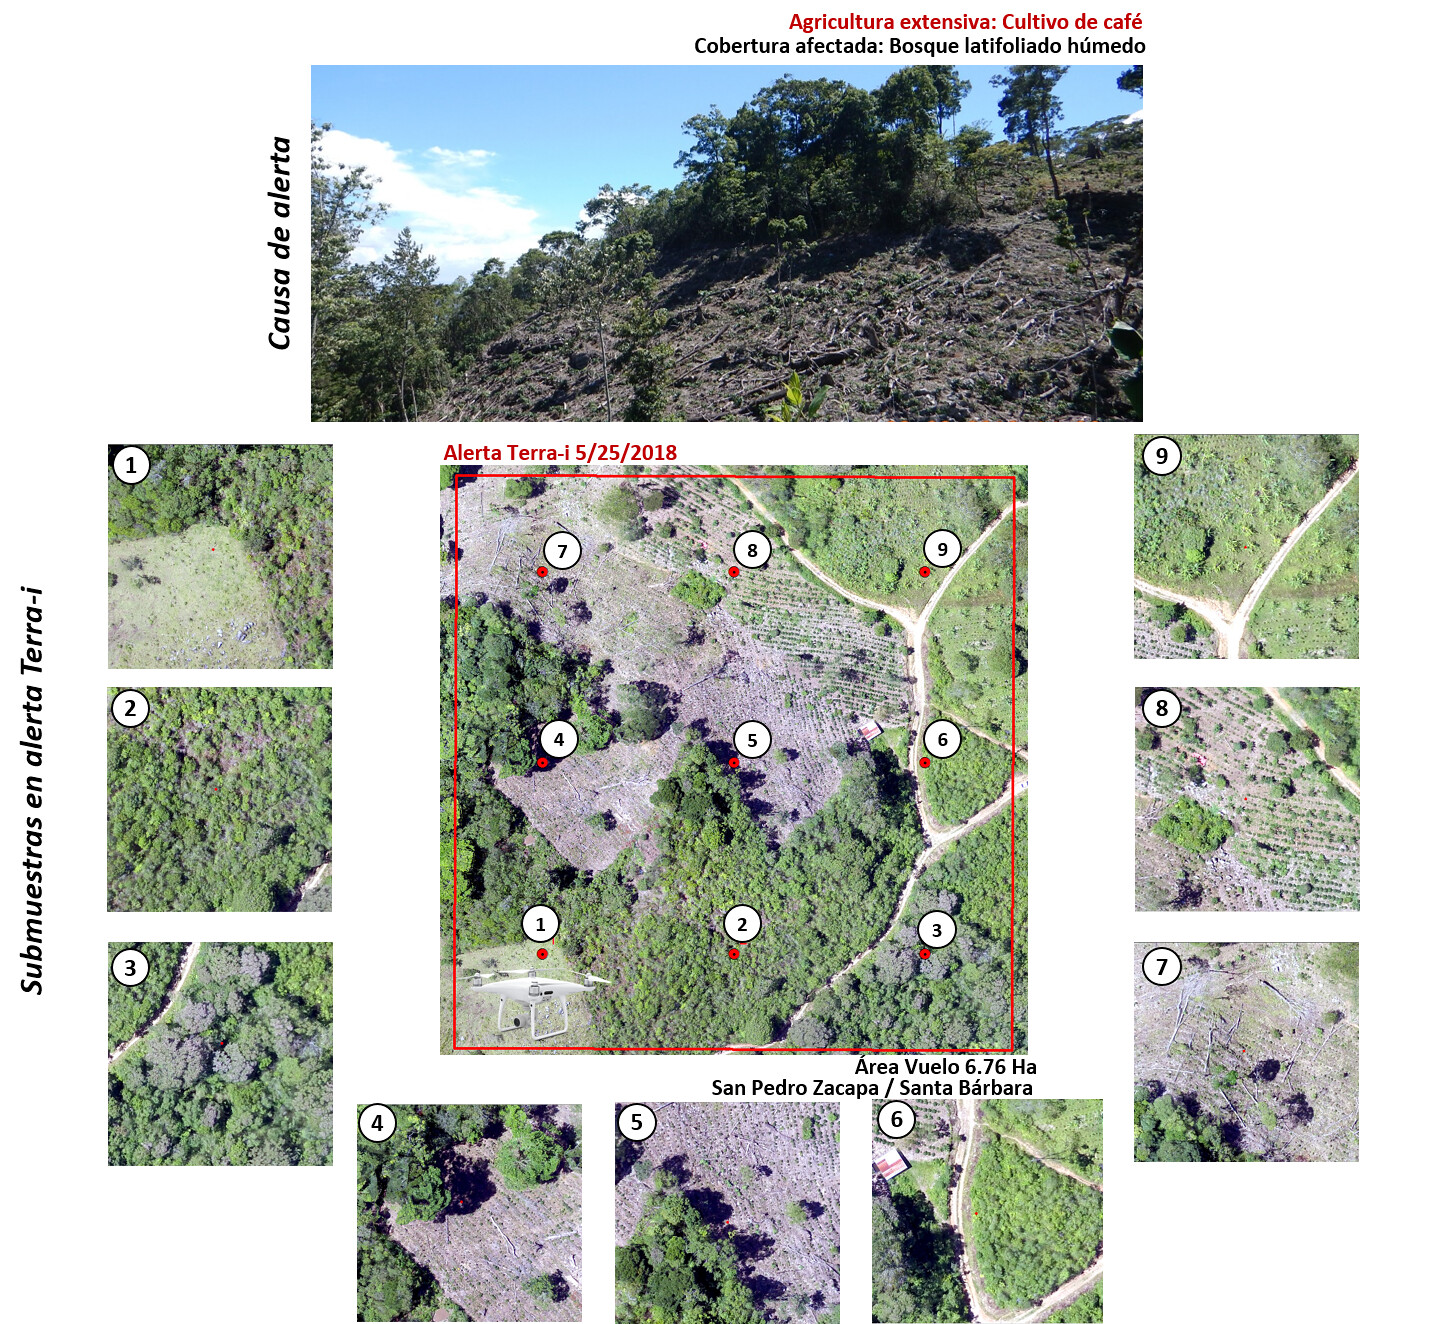 Análisis de submuestras en alerta Terra-i detectada el 25 de mayo del 2018, datos recolectados en campo con drone Phantom 3 advanced, causa directa de campo: cultivo de café, cobertura afectada: bosque latifoliado húmedo.